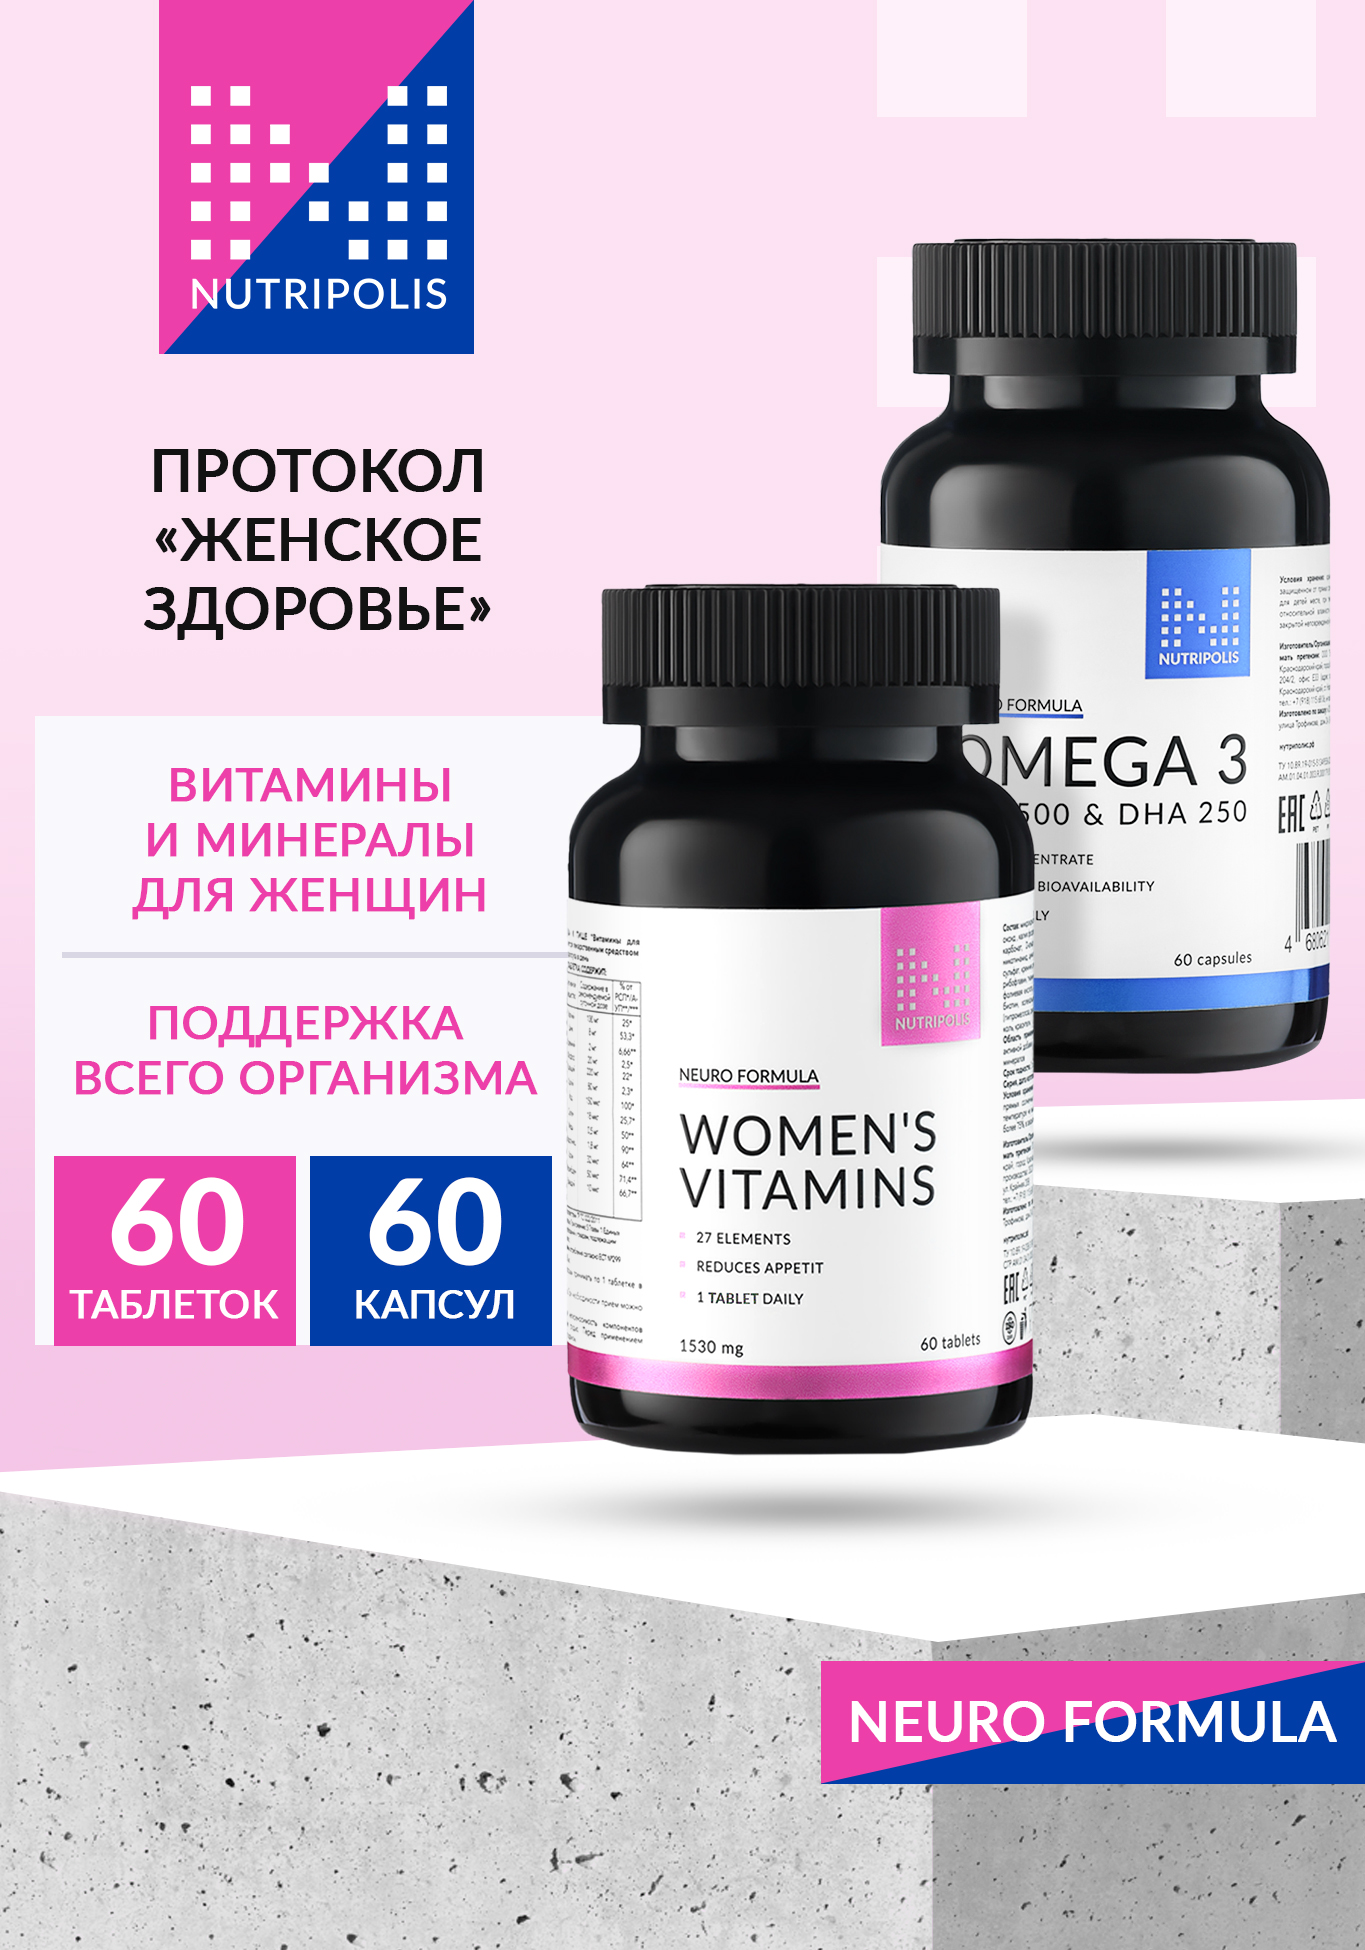 Протокол "Женское здоровье" NUTRIPOLIS